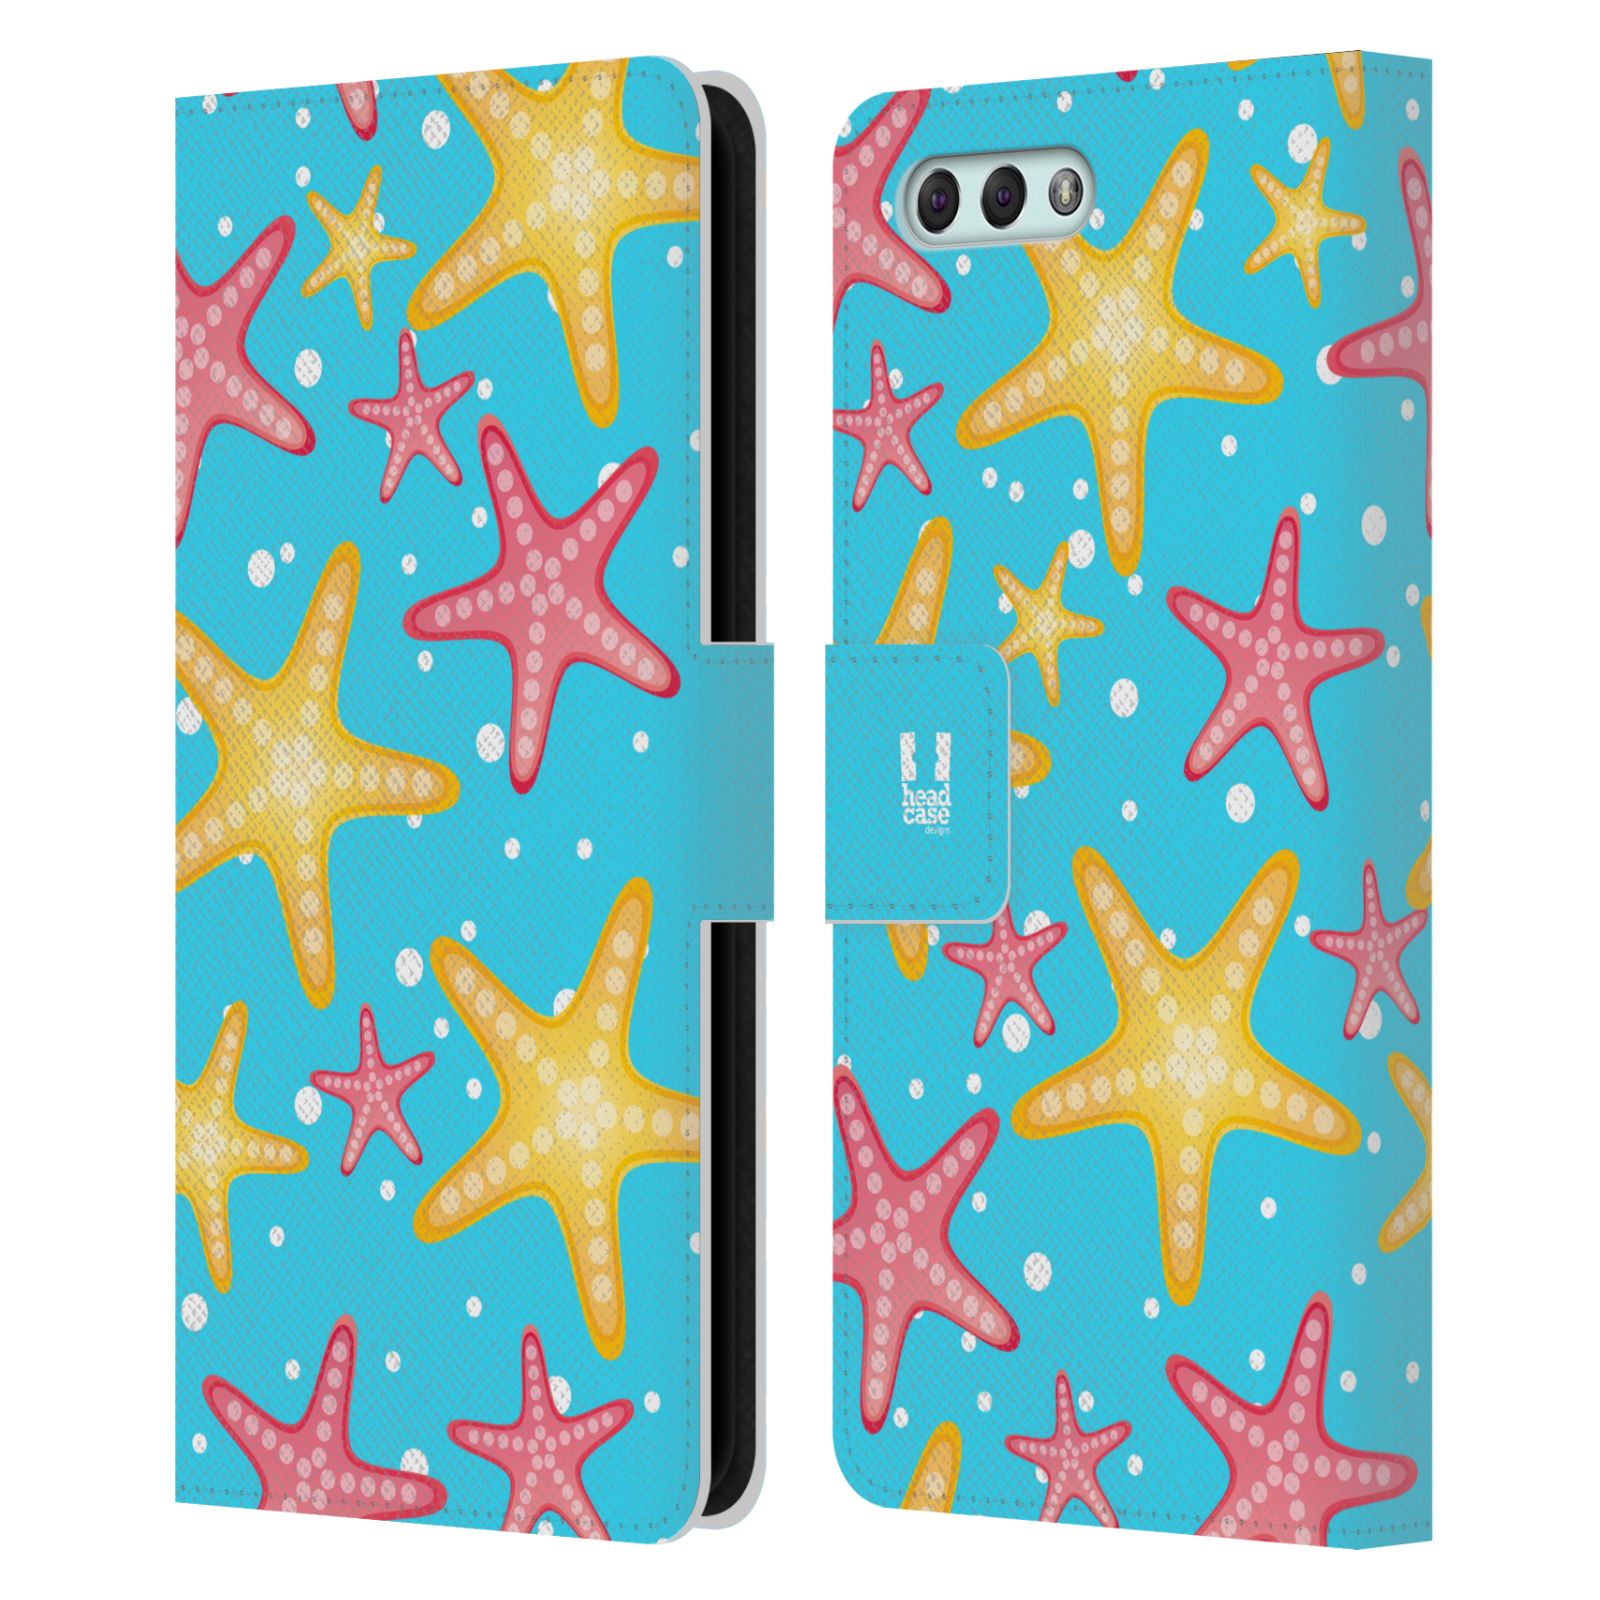 Pouzdro pro mobil Asus Zenfone 4 ZE554KL  - Mořský vzor - barevné hvězdy